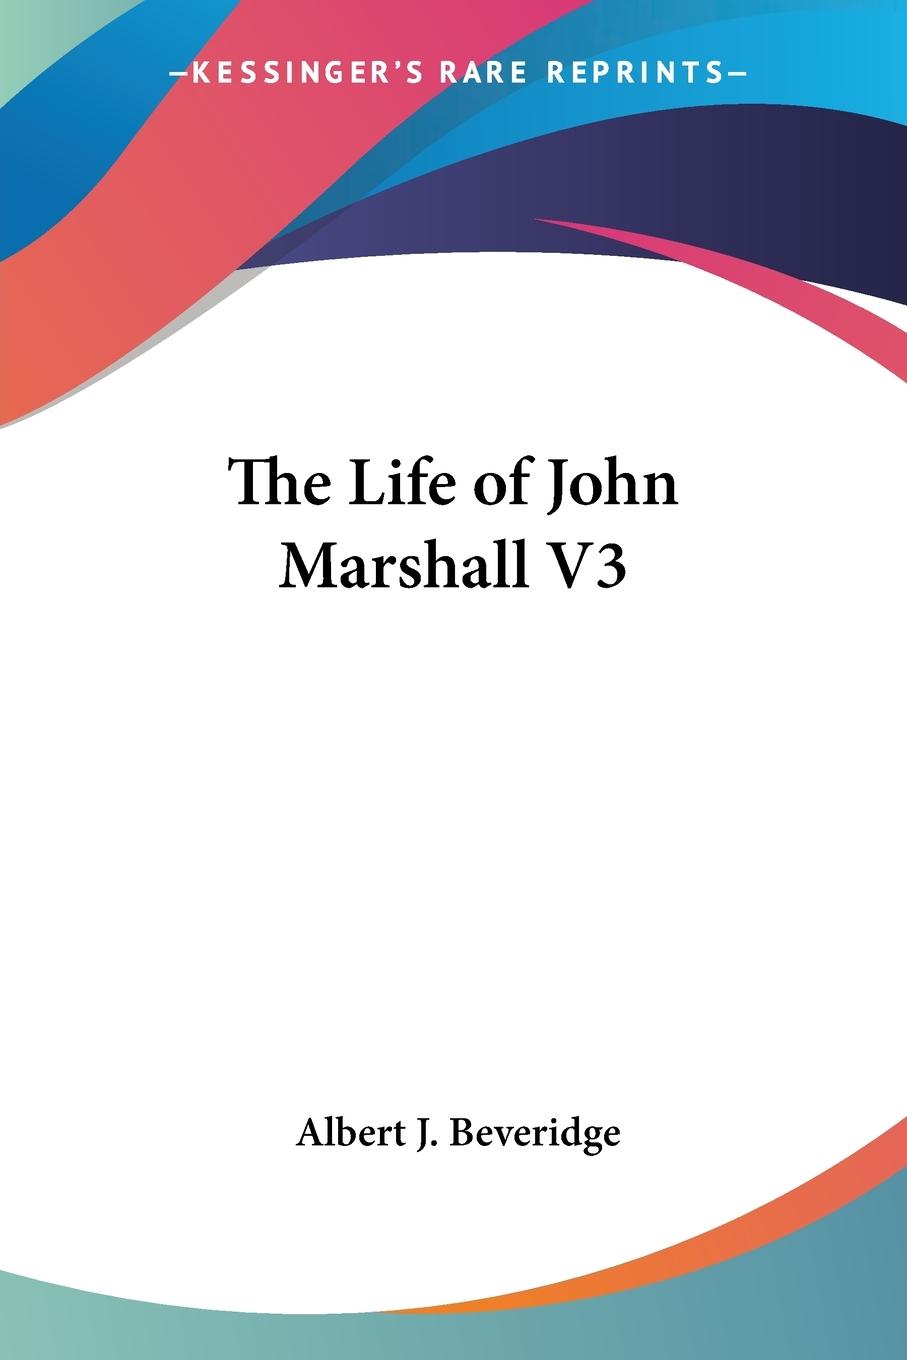 The Life of John Marshall V3 - Beveridge, Albert J.